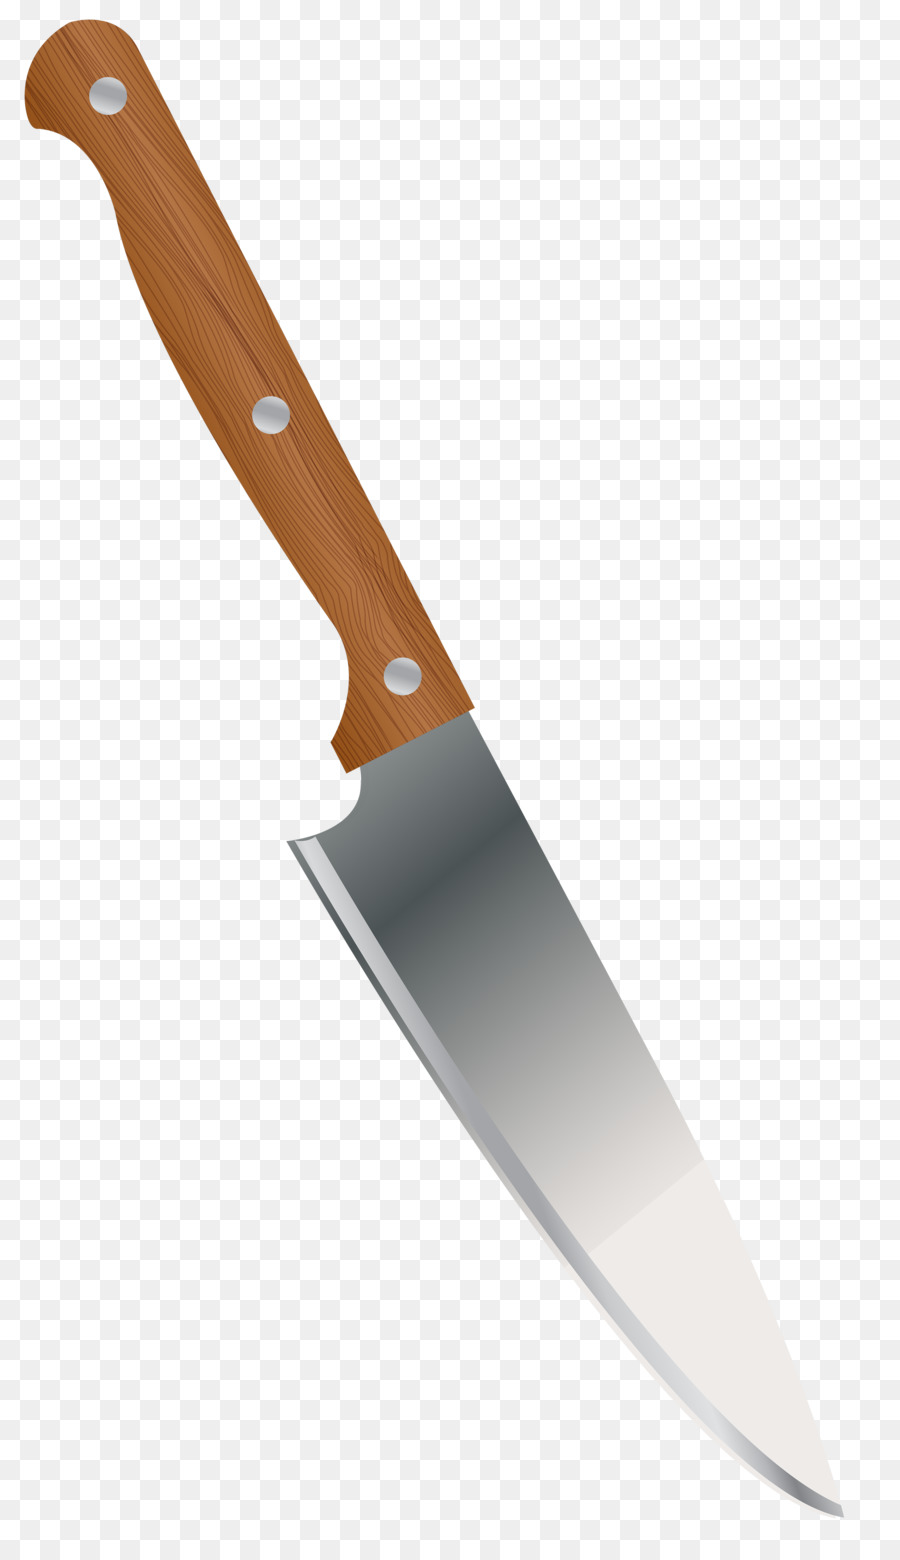 Knife Kitchen Knives Clip art - knives png download - 2332*4000 - Free Transparent Knife png Download.